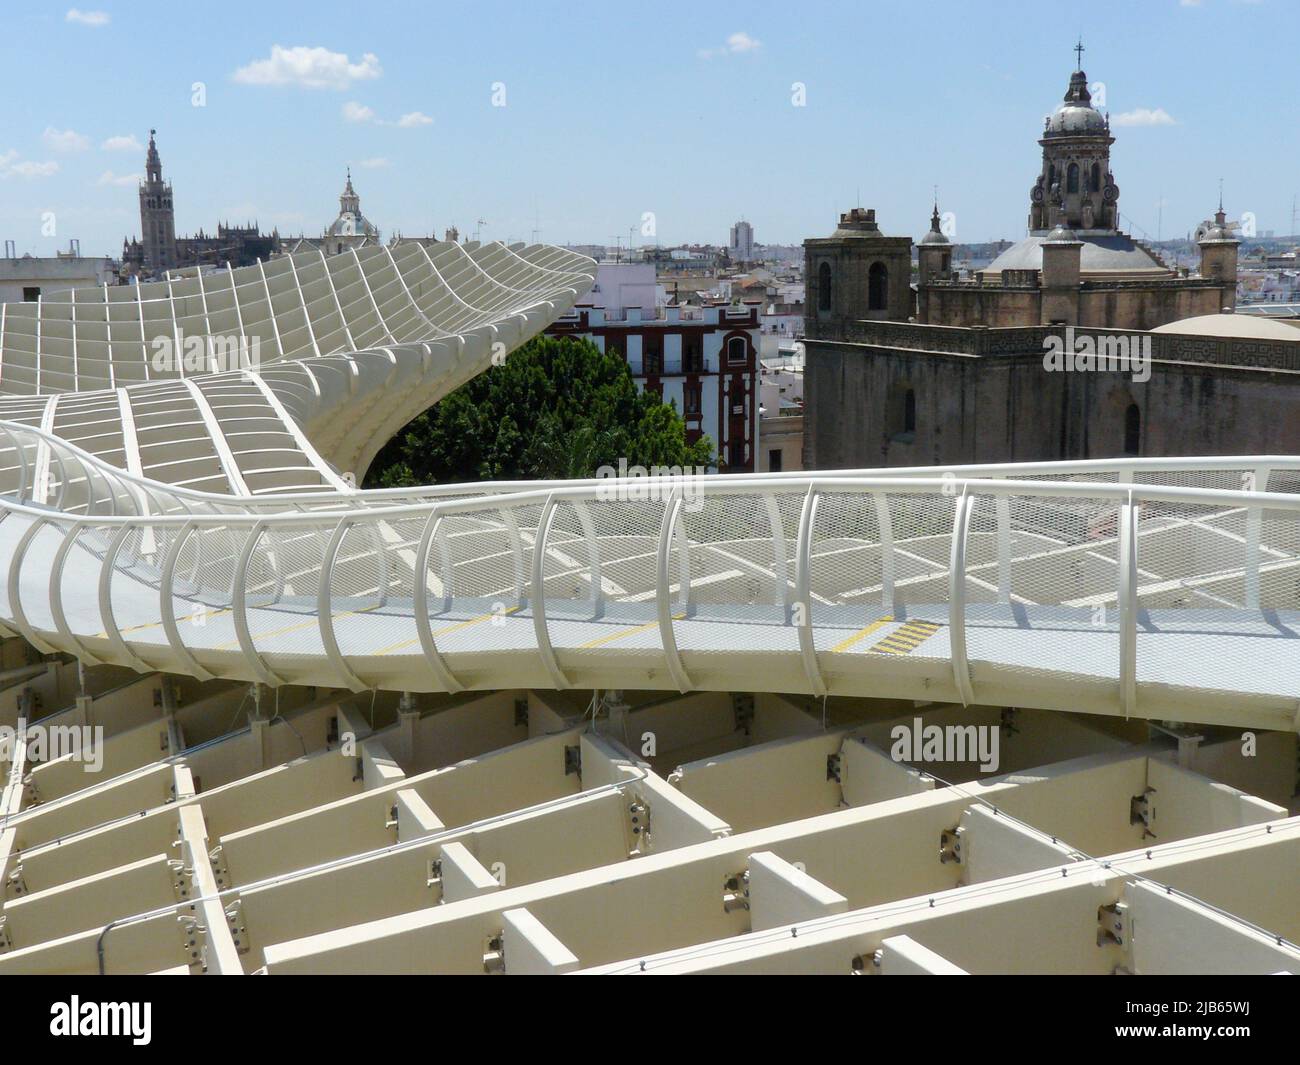 Séville (Espagne). Passerelle supérieure du parasol Metropol également connu sous le nom de Seas de Sevilla. Banque D'Images